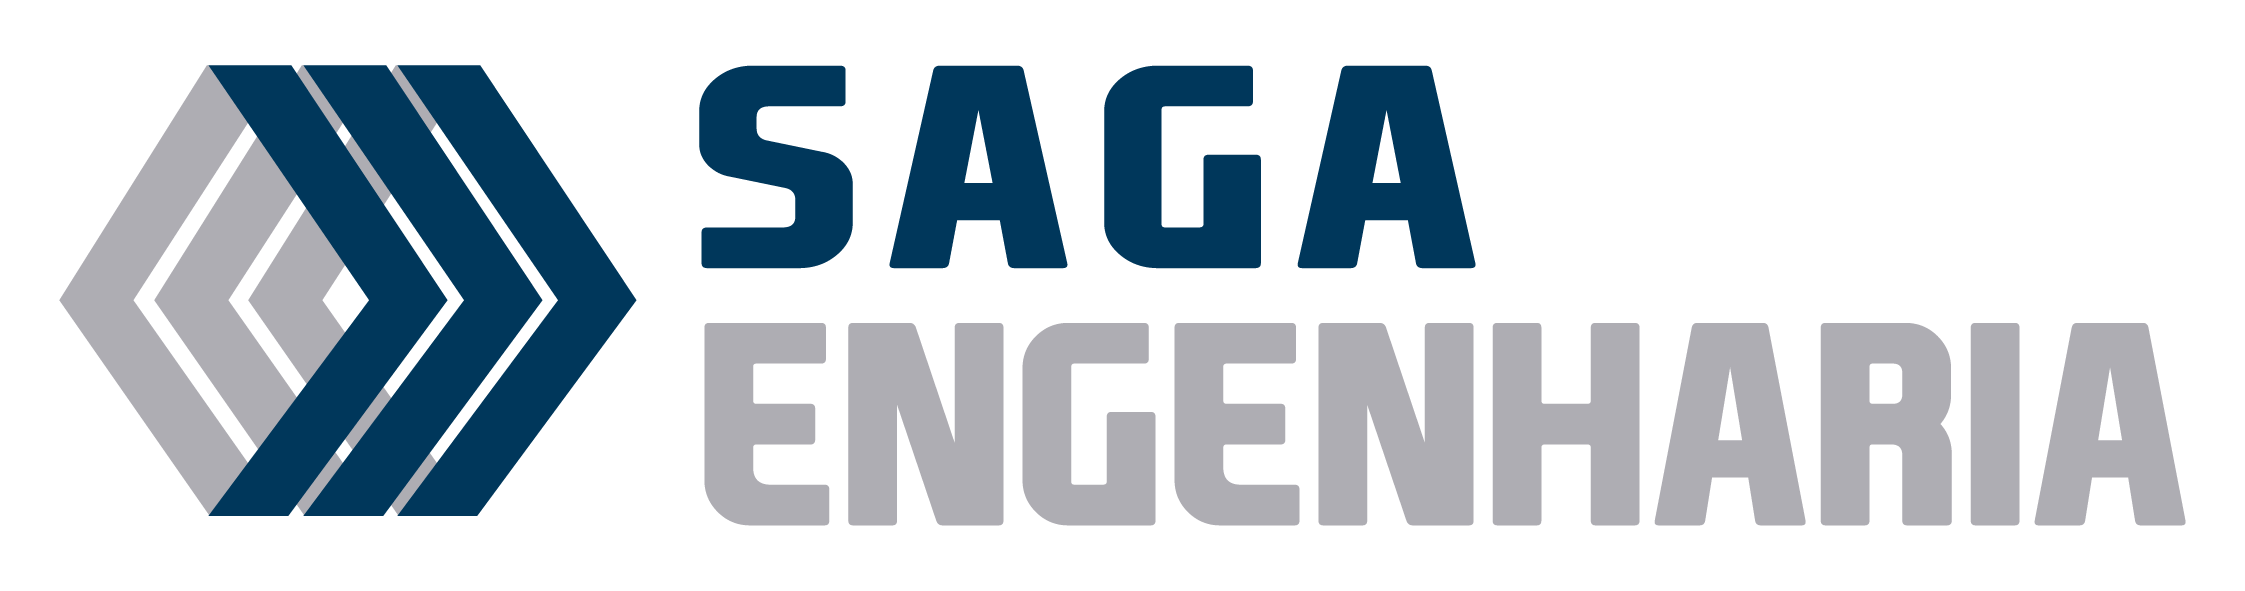 Saga Engenharia